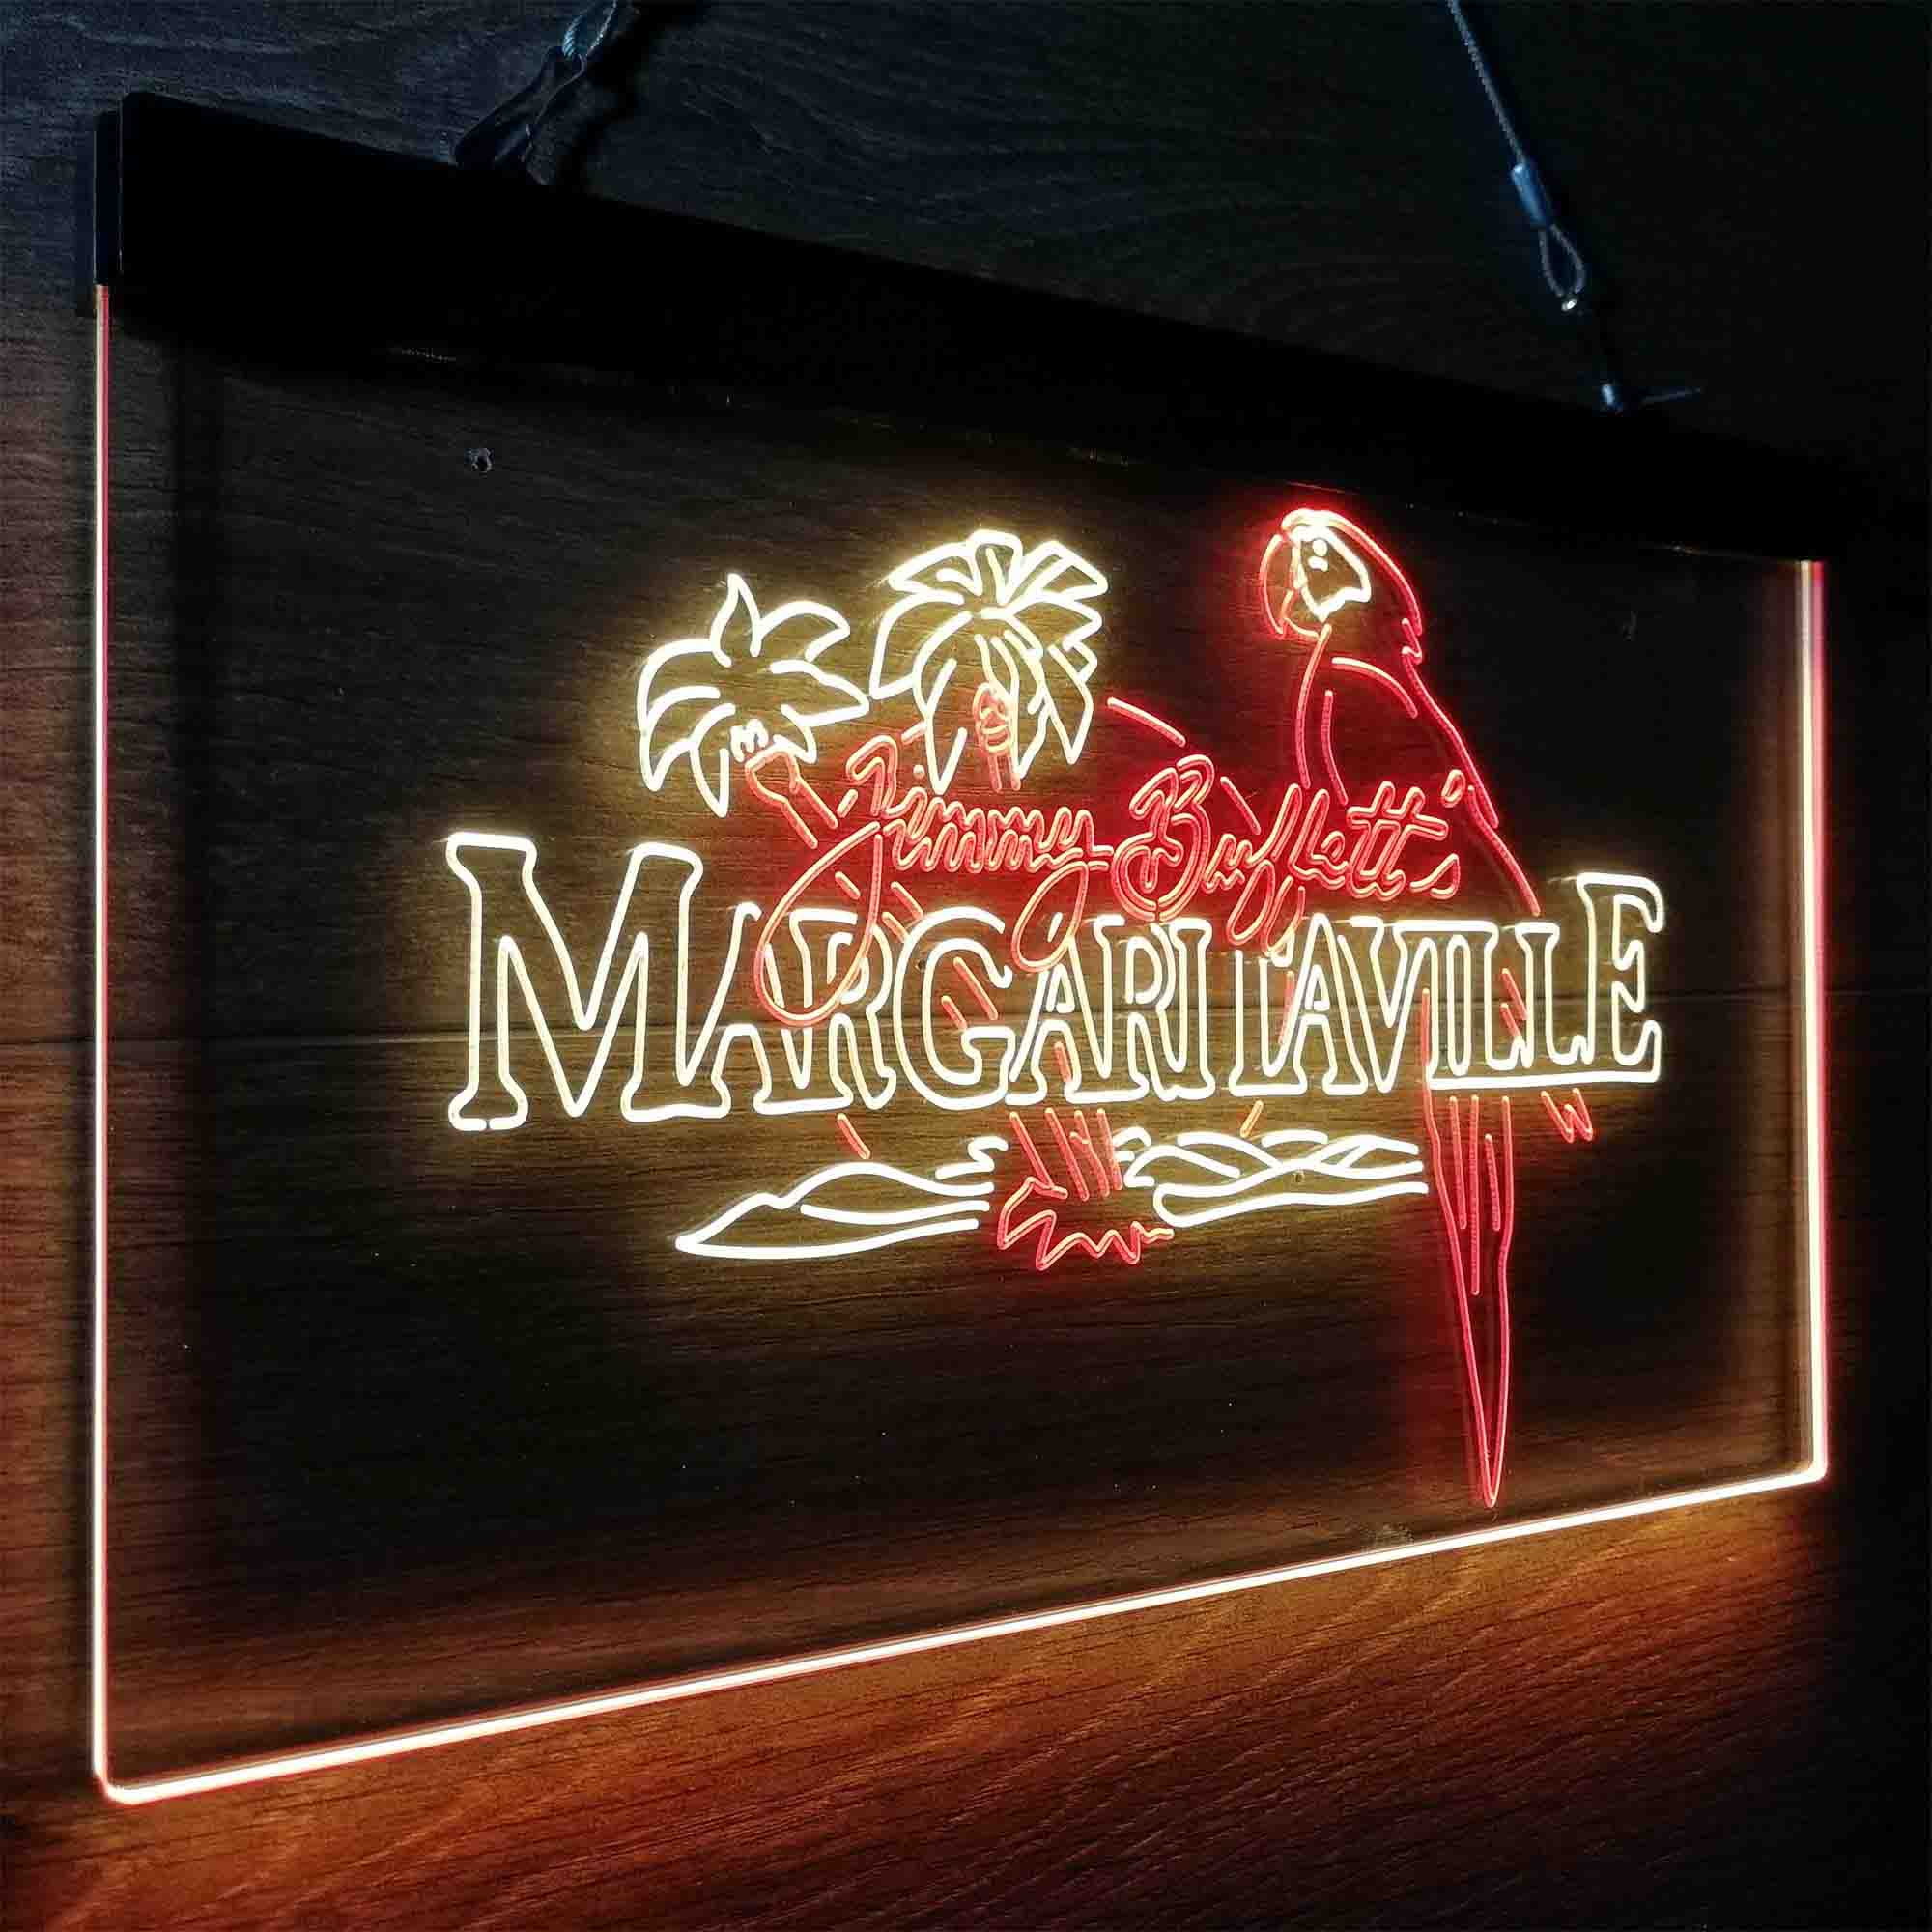 Margaritavilles Jimmys Buffetts Parrot LED Neon Sign